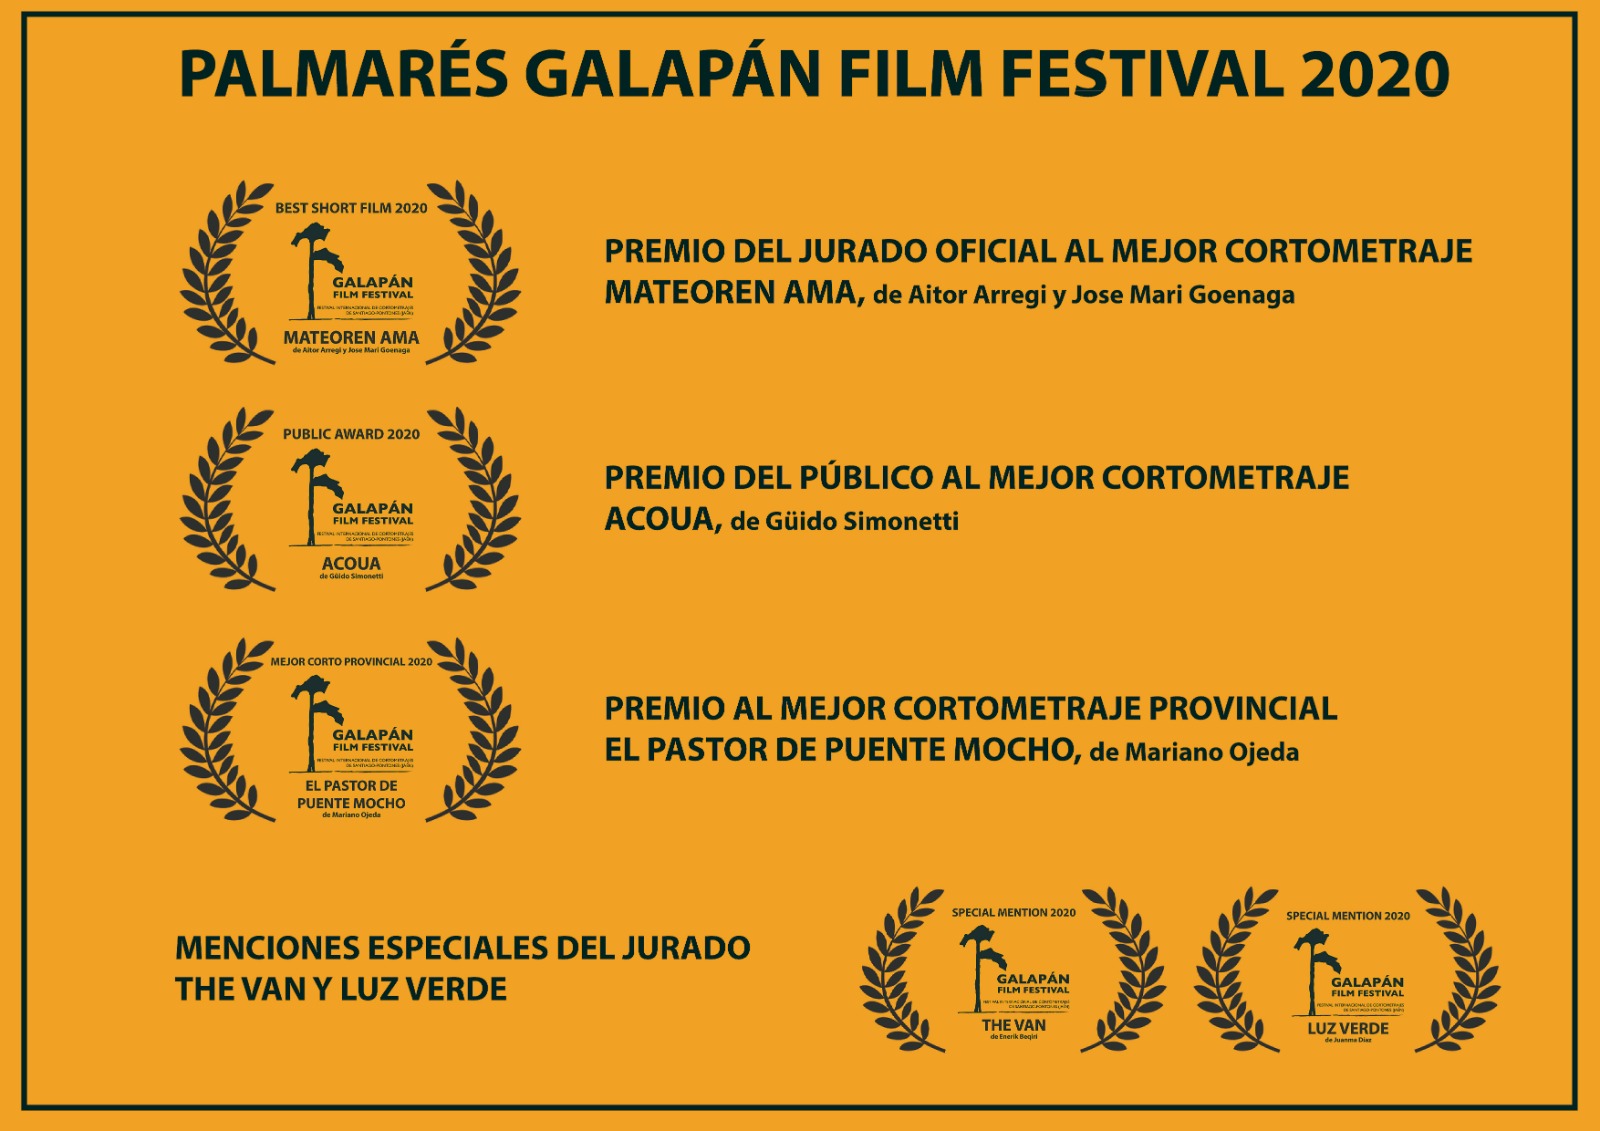 Galapán Film Festival Palmarés 2020